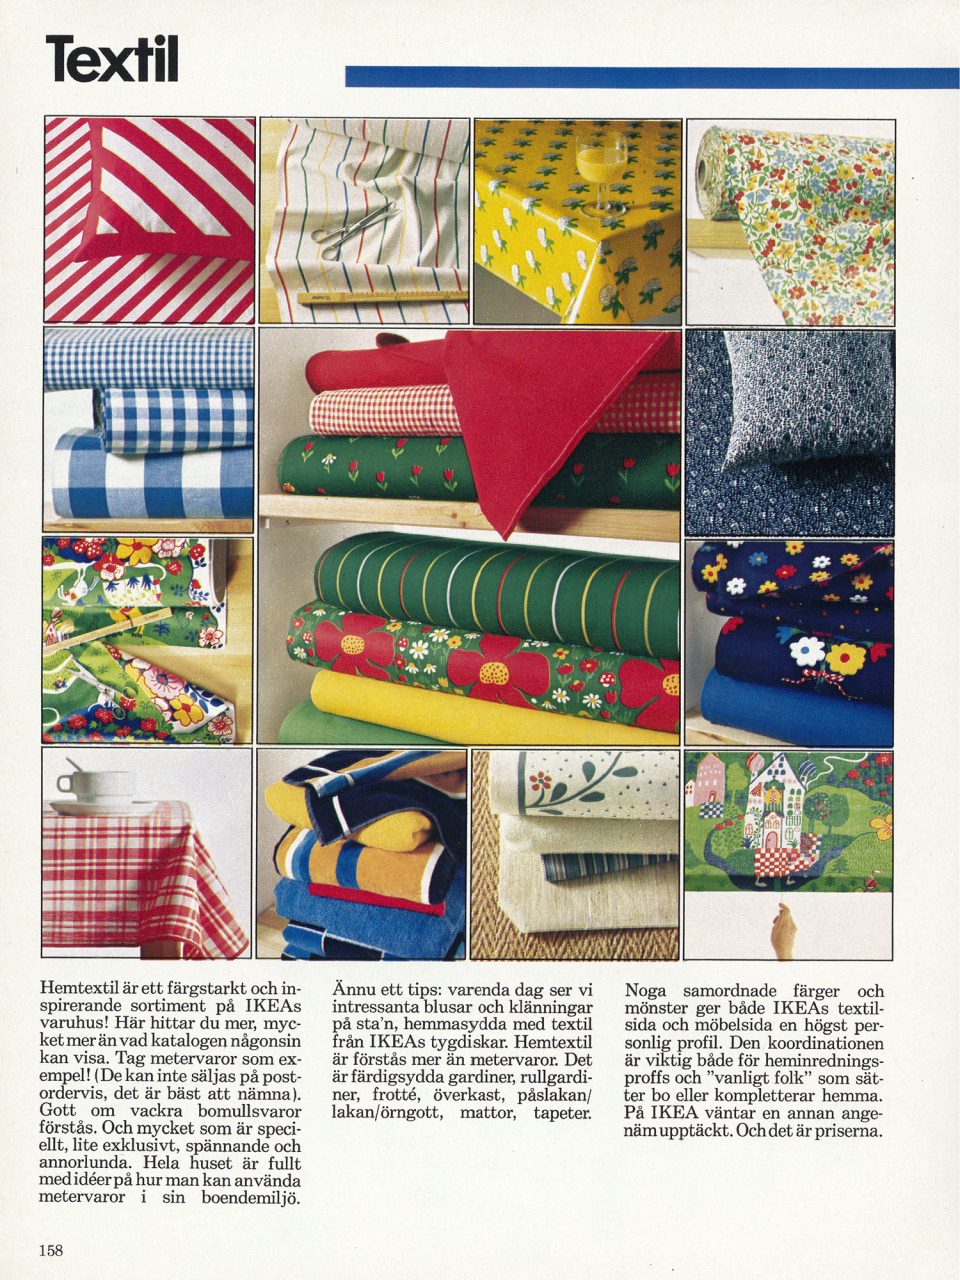 Sida om textil i IKEA katalogen 1977, många bilder visar färgstarka textilier, flera med grafiska mönster eller blommönster.